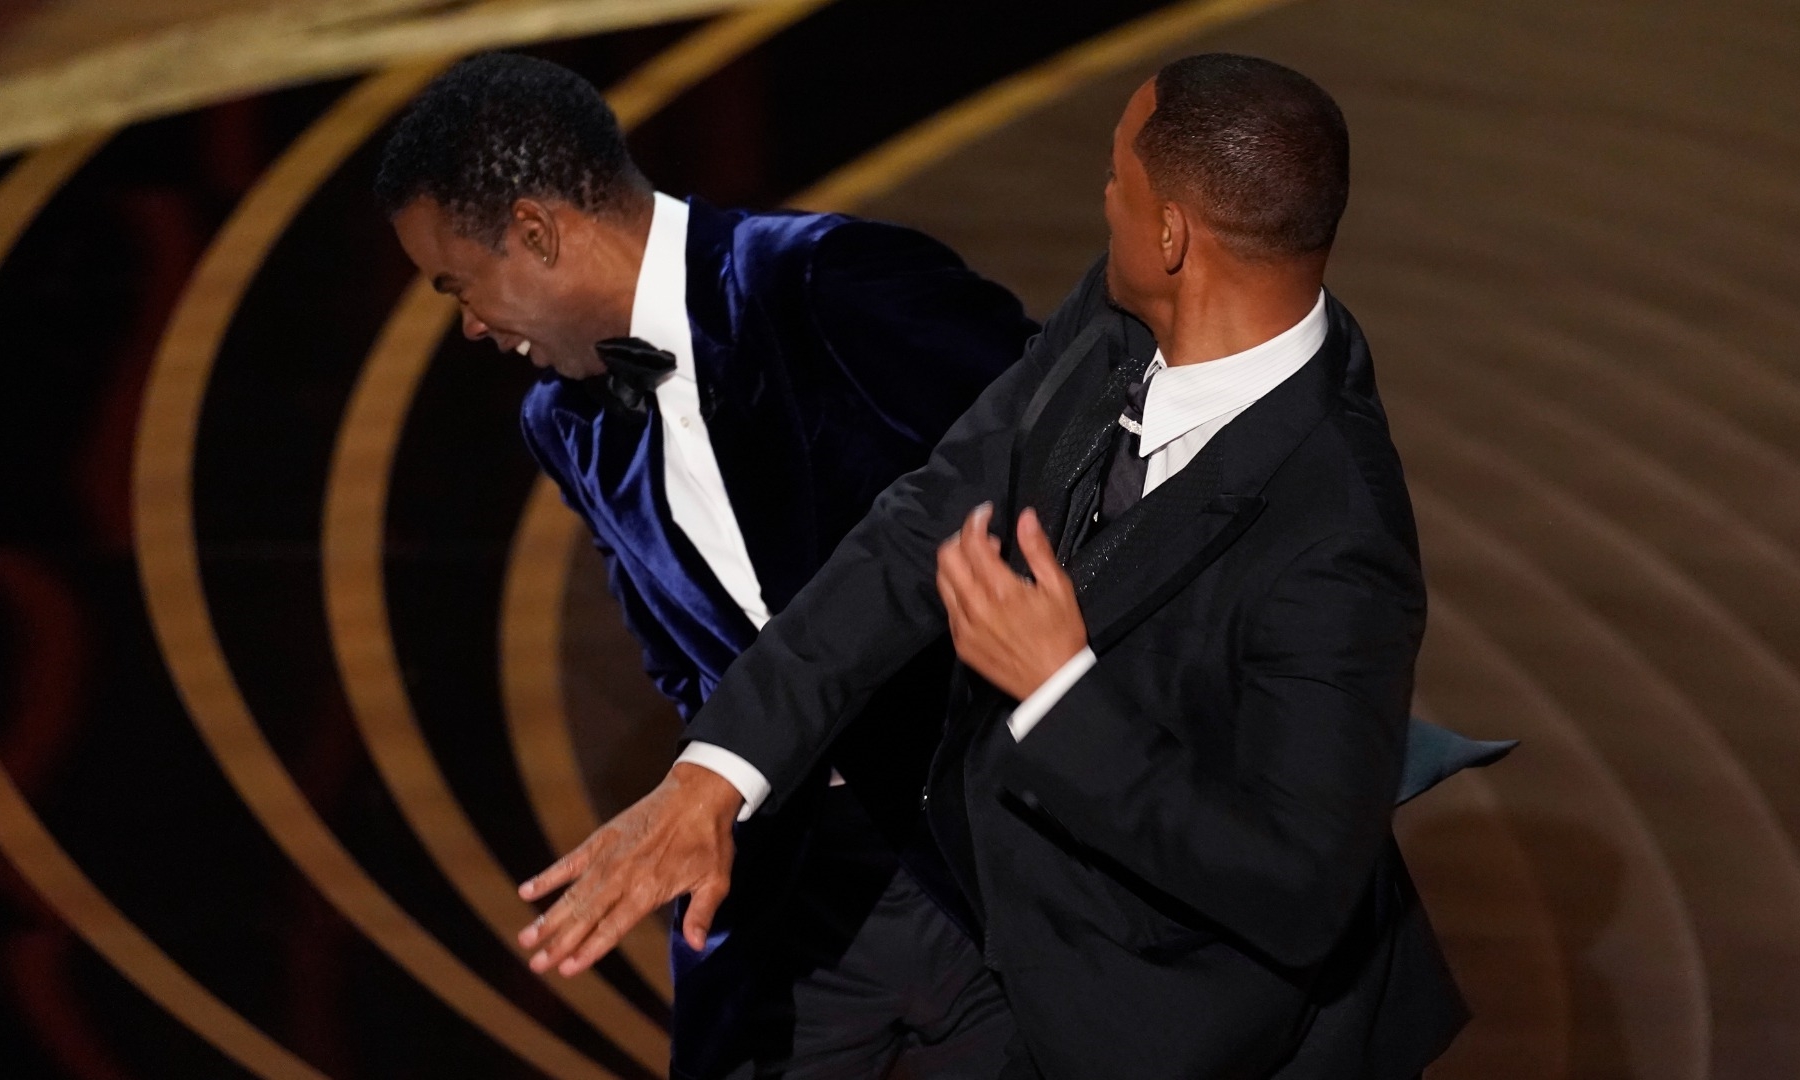 Cú bạt tai 'cháy má' của Will Smith dành cho Chris Rock ngay tại sân khấu trực tiếp Oscar 2022.